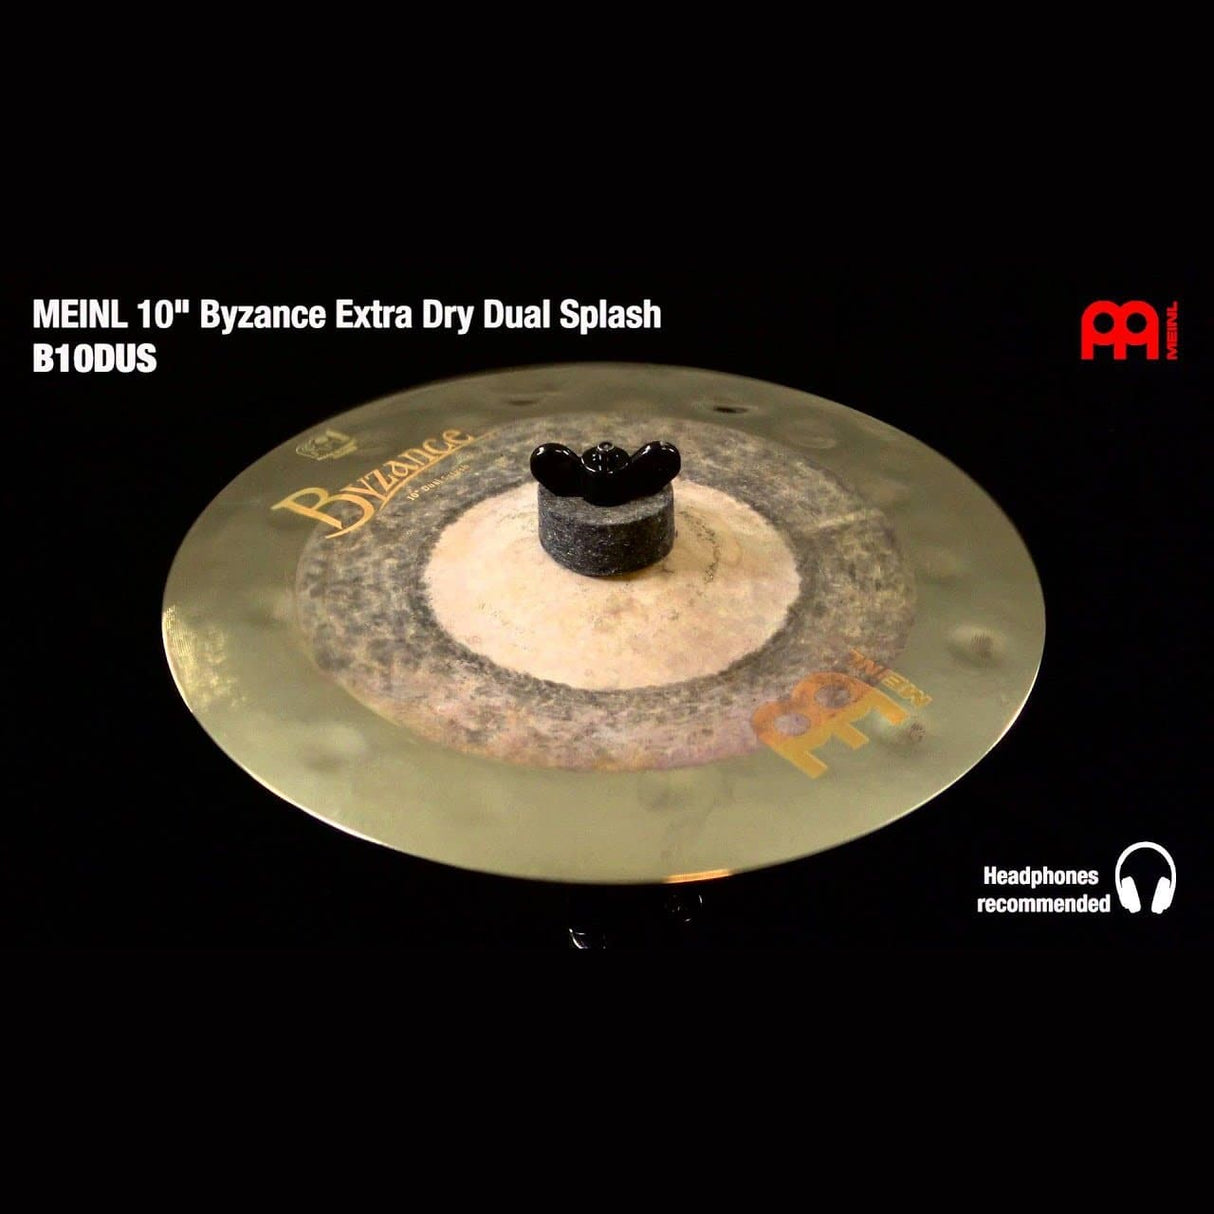 Meinl Byzance Dual Splash Cymbal 10